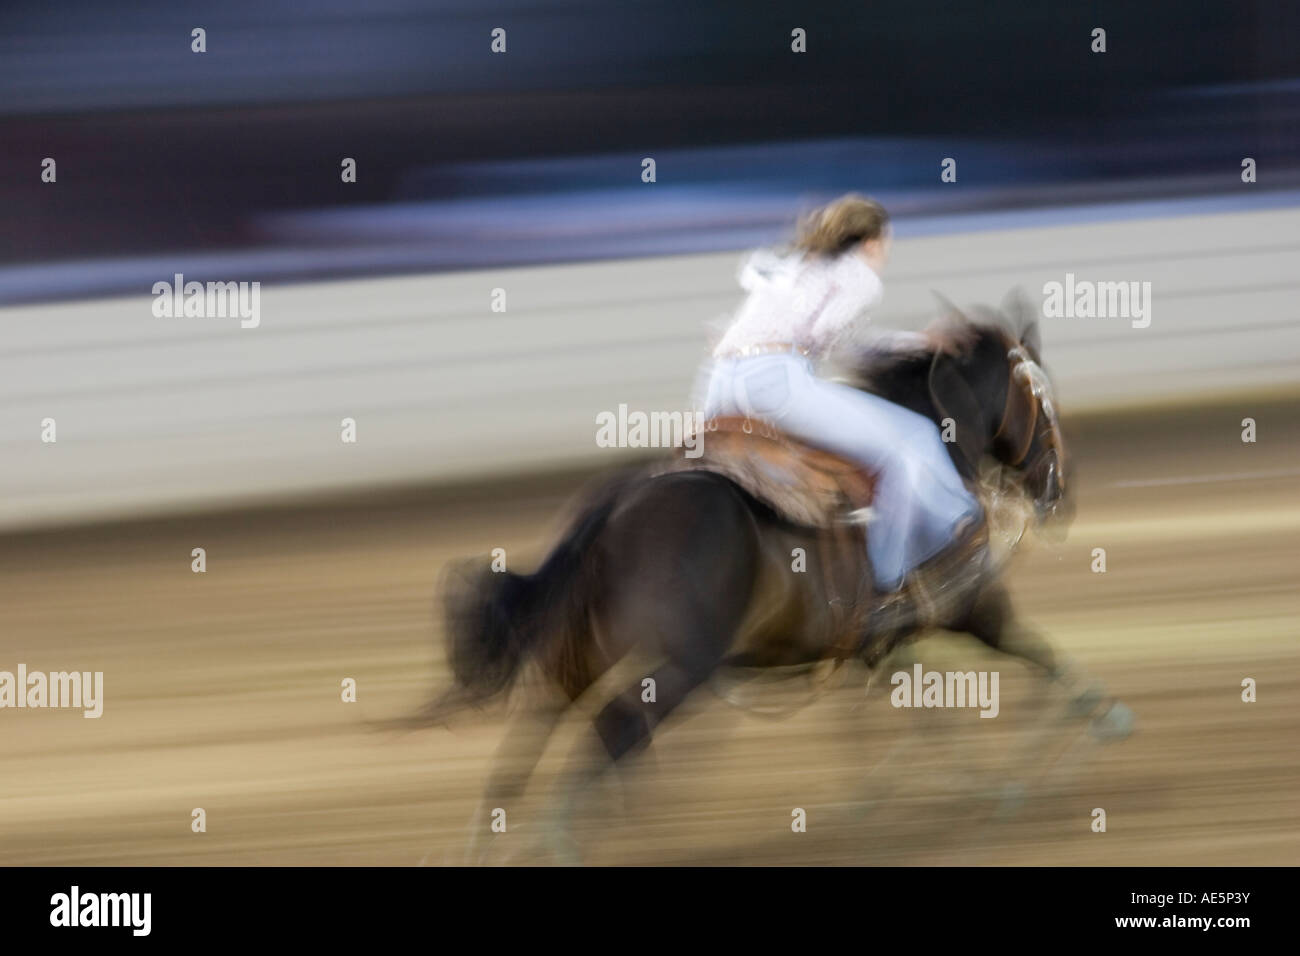 Teenager-Mädchen Rennen auf ihrem Pferd in einer Unschärfe, wie sie in einer Rennveranstaltung Lauf antreten Stockfoto